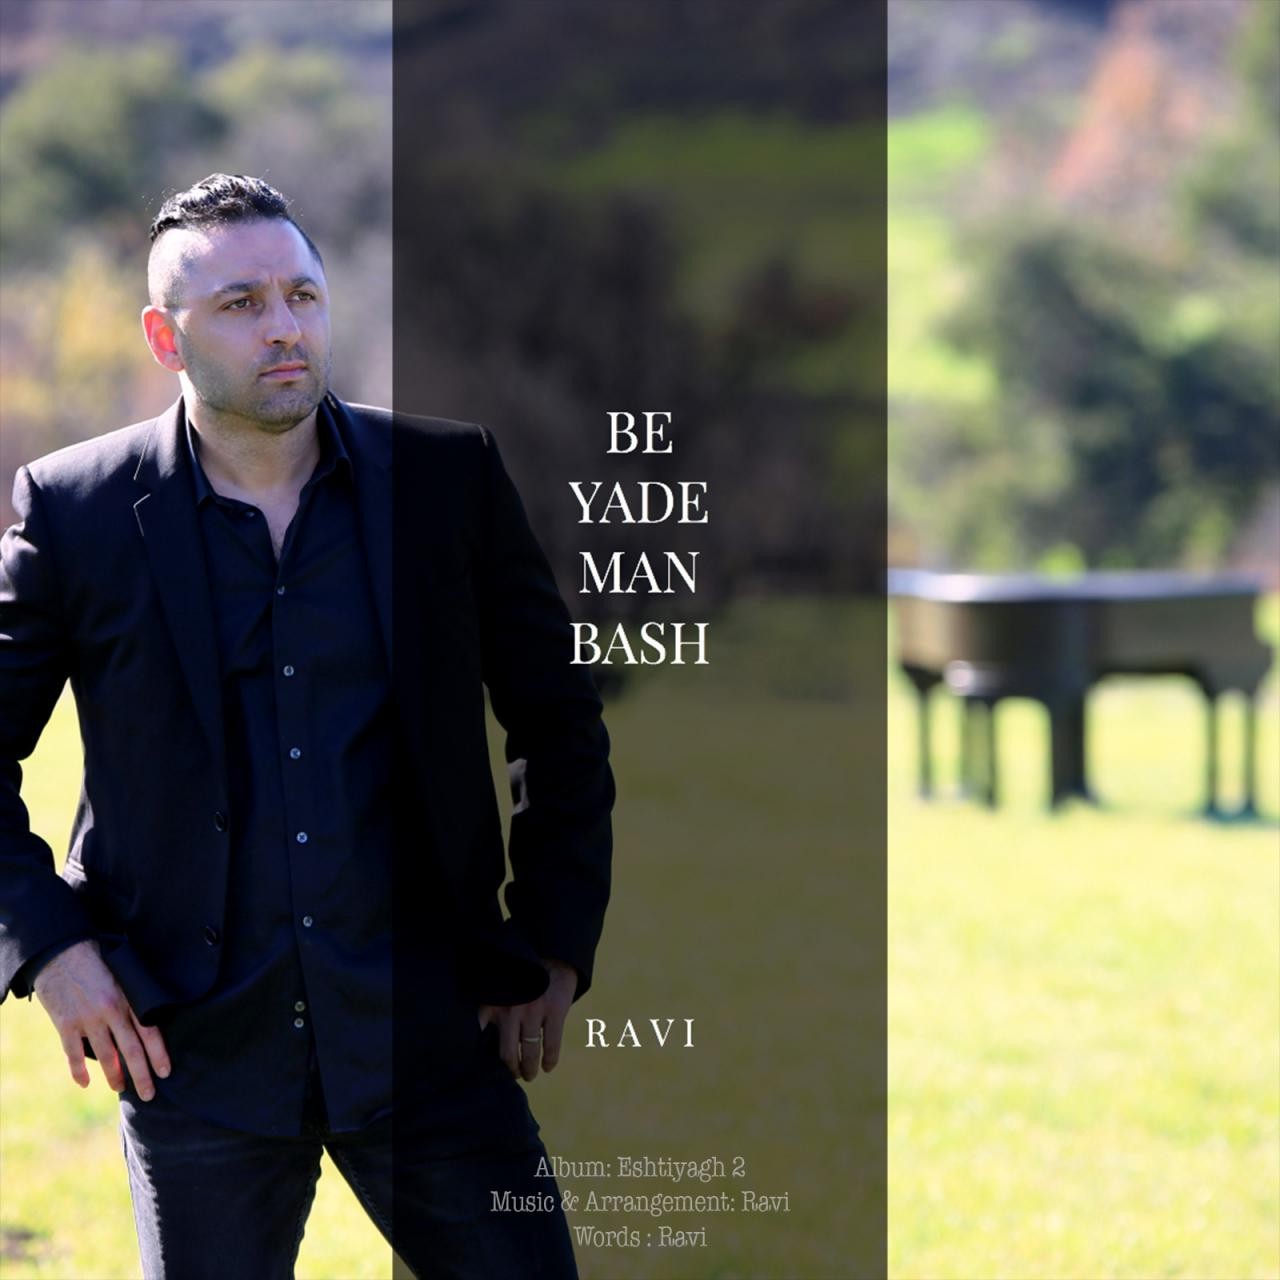  دانلود آهنگ جدید راوی - به یاد من باش | Download New Music By Ravi - Be Yade Man Bash